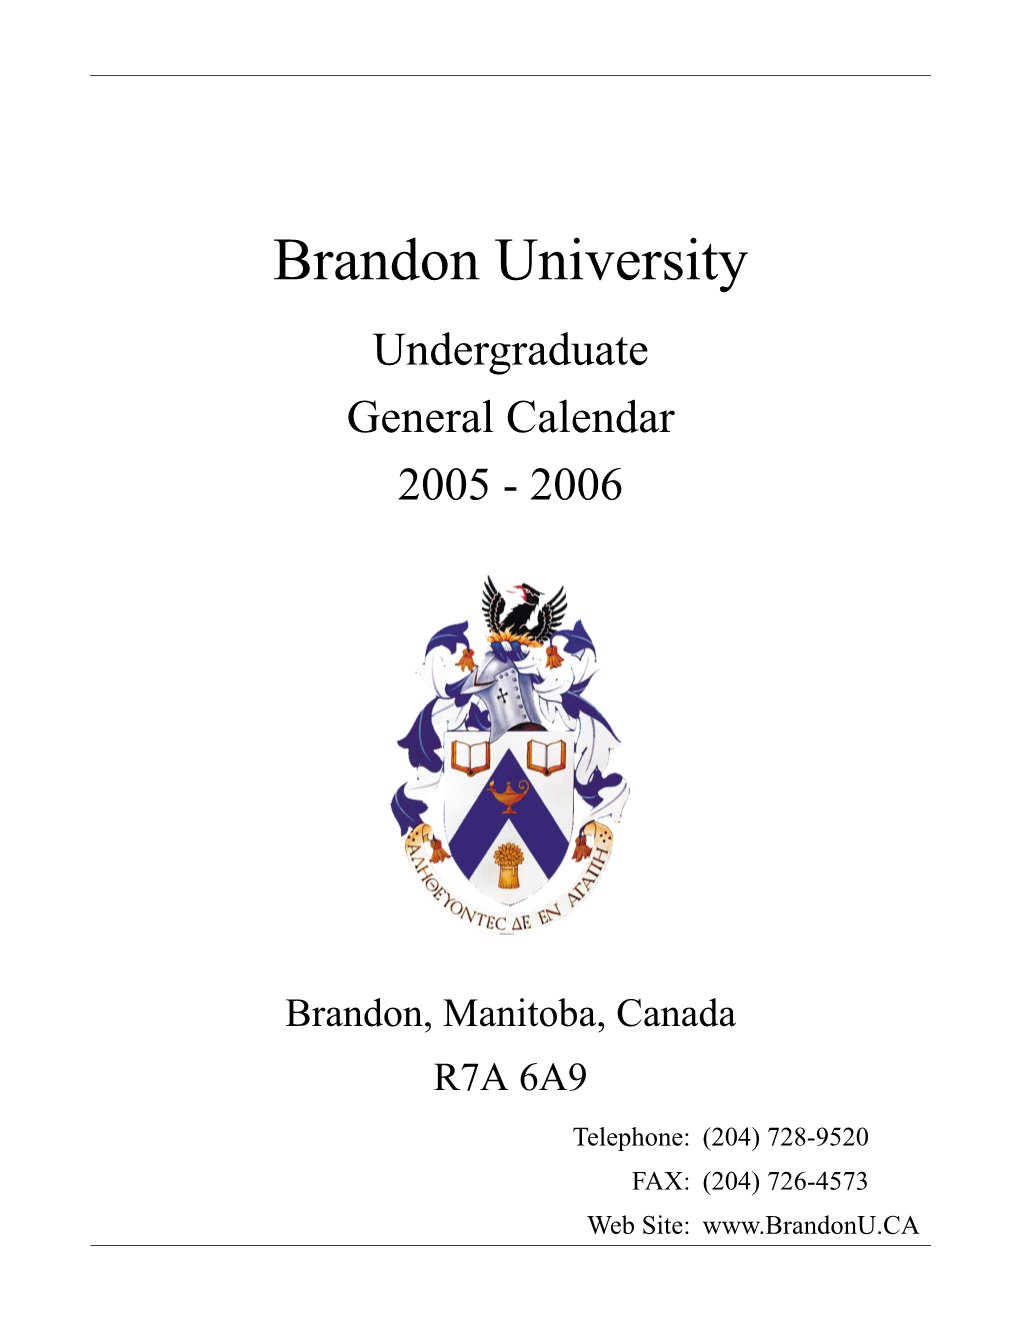 Undergraduate Calendar 2005-2006